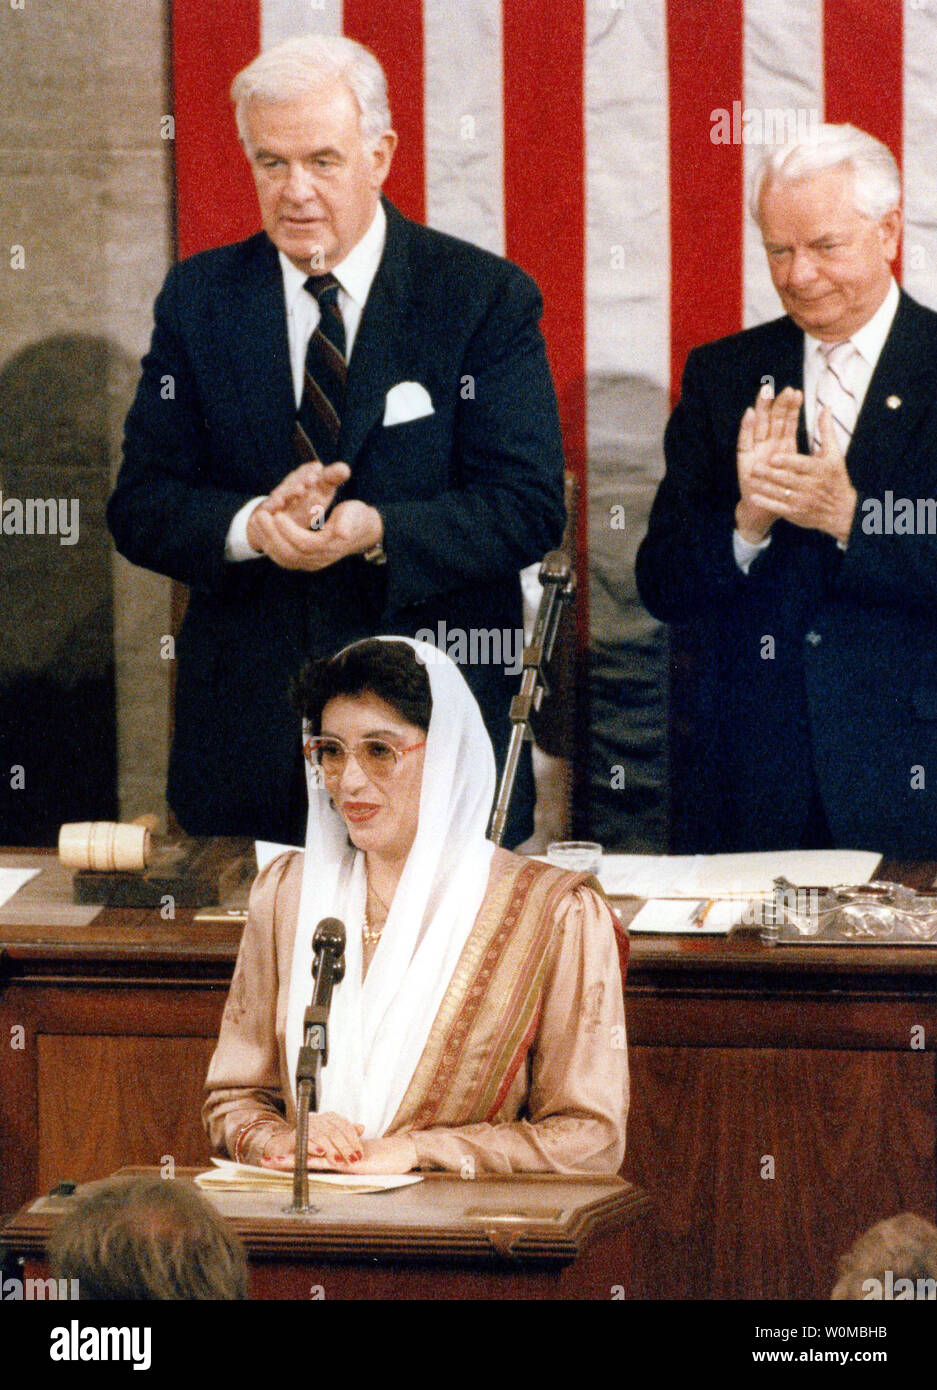 L'ancien Premier Ministre pakistanais et leader de l'opposition, Benazir Bhutto (C) a été assassiné dans une attaque suicide après avoir parlé à un rassemblement électoral à Rawalpindi, au Pakistan le 27 décembre 2007. L'agresseur de Bhutto lui a tiré dans le cou et la poitrine et ensuite s'est fait exploser à côté de sa voiture. Elle avait 54 ans. Bhutto est illustré dans ce 7 Juin 1989 photo d'une réunion conjointe du Congrès. Bhutto sont debout derrière le président de la Chambre, Thomas Foley D-Washington (L) et le sénateur Robert Byrd (D-WV). (Photo d'UPI/Ricardo Watson/files) Banque D'Images